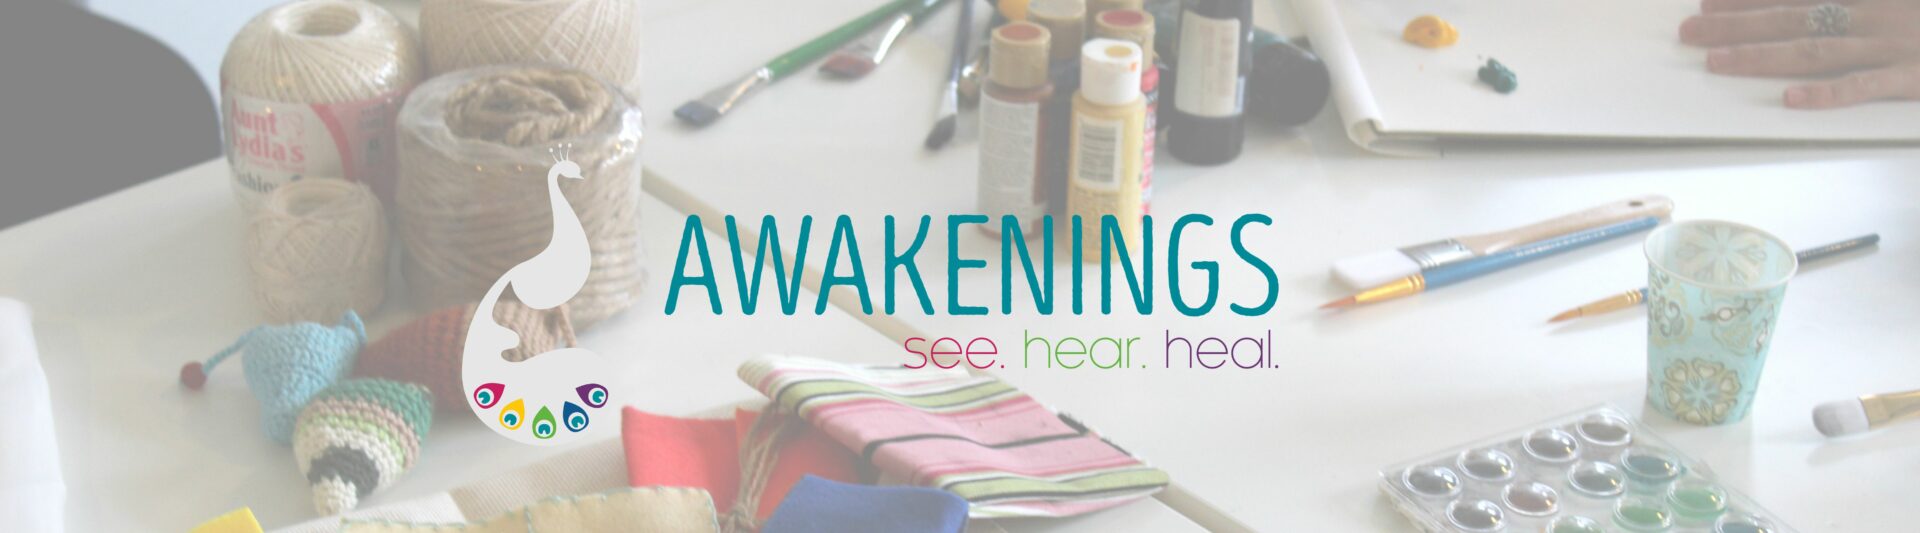 Awakenings see hear heal